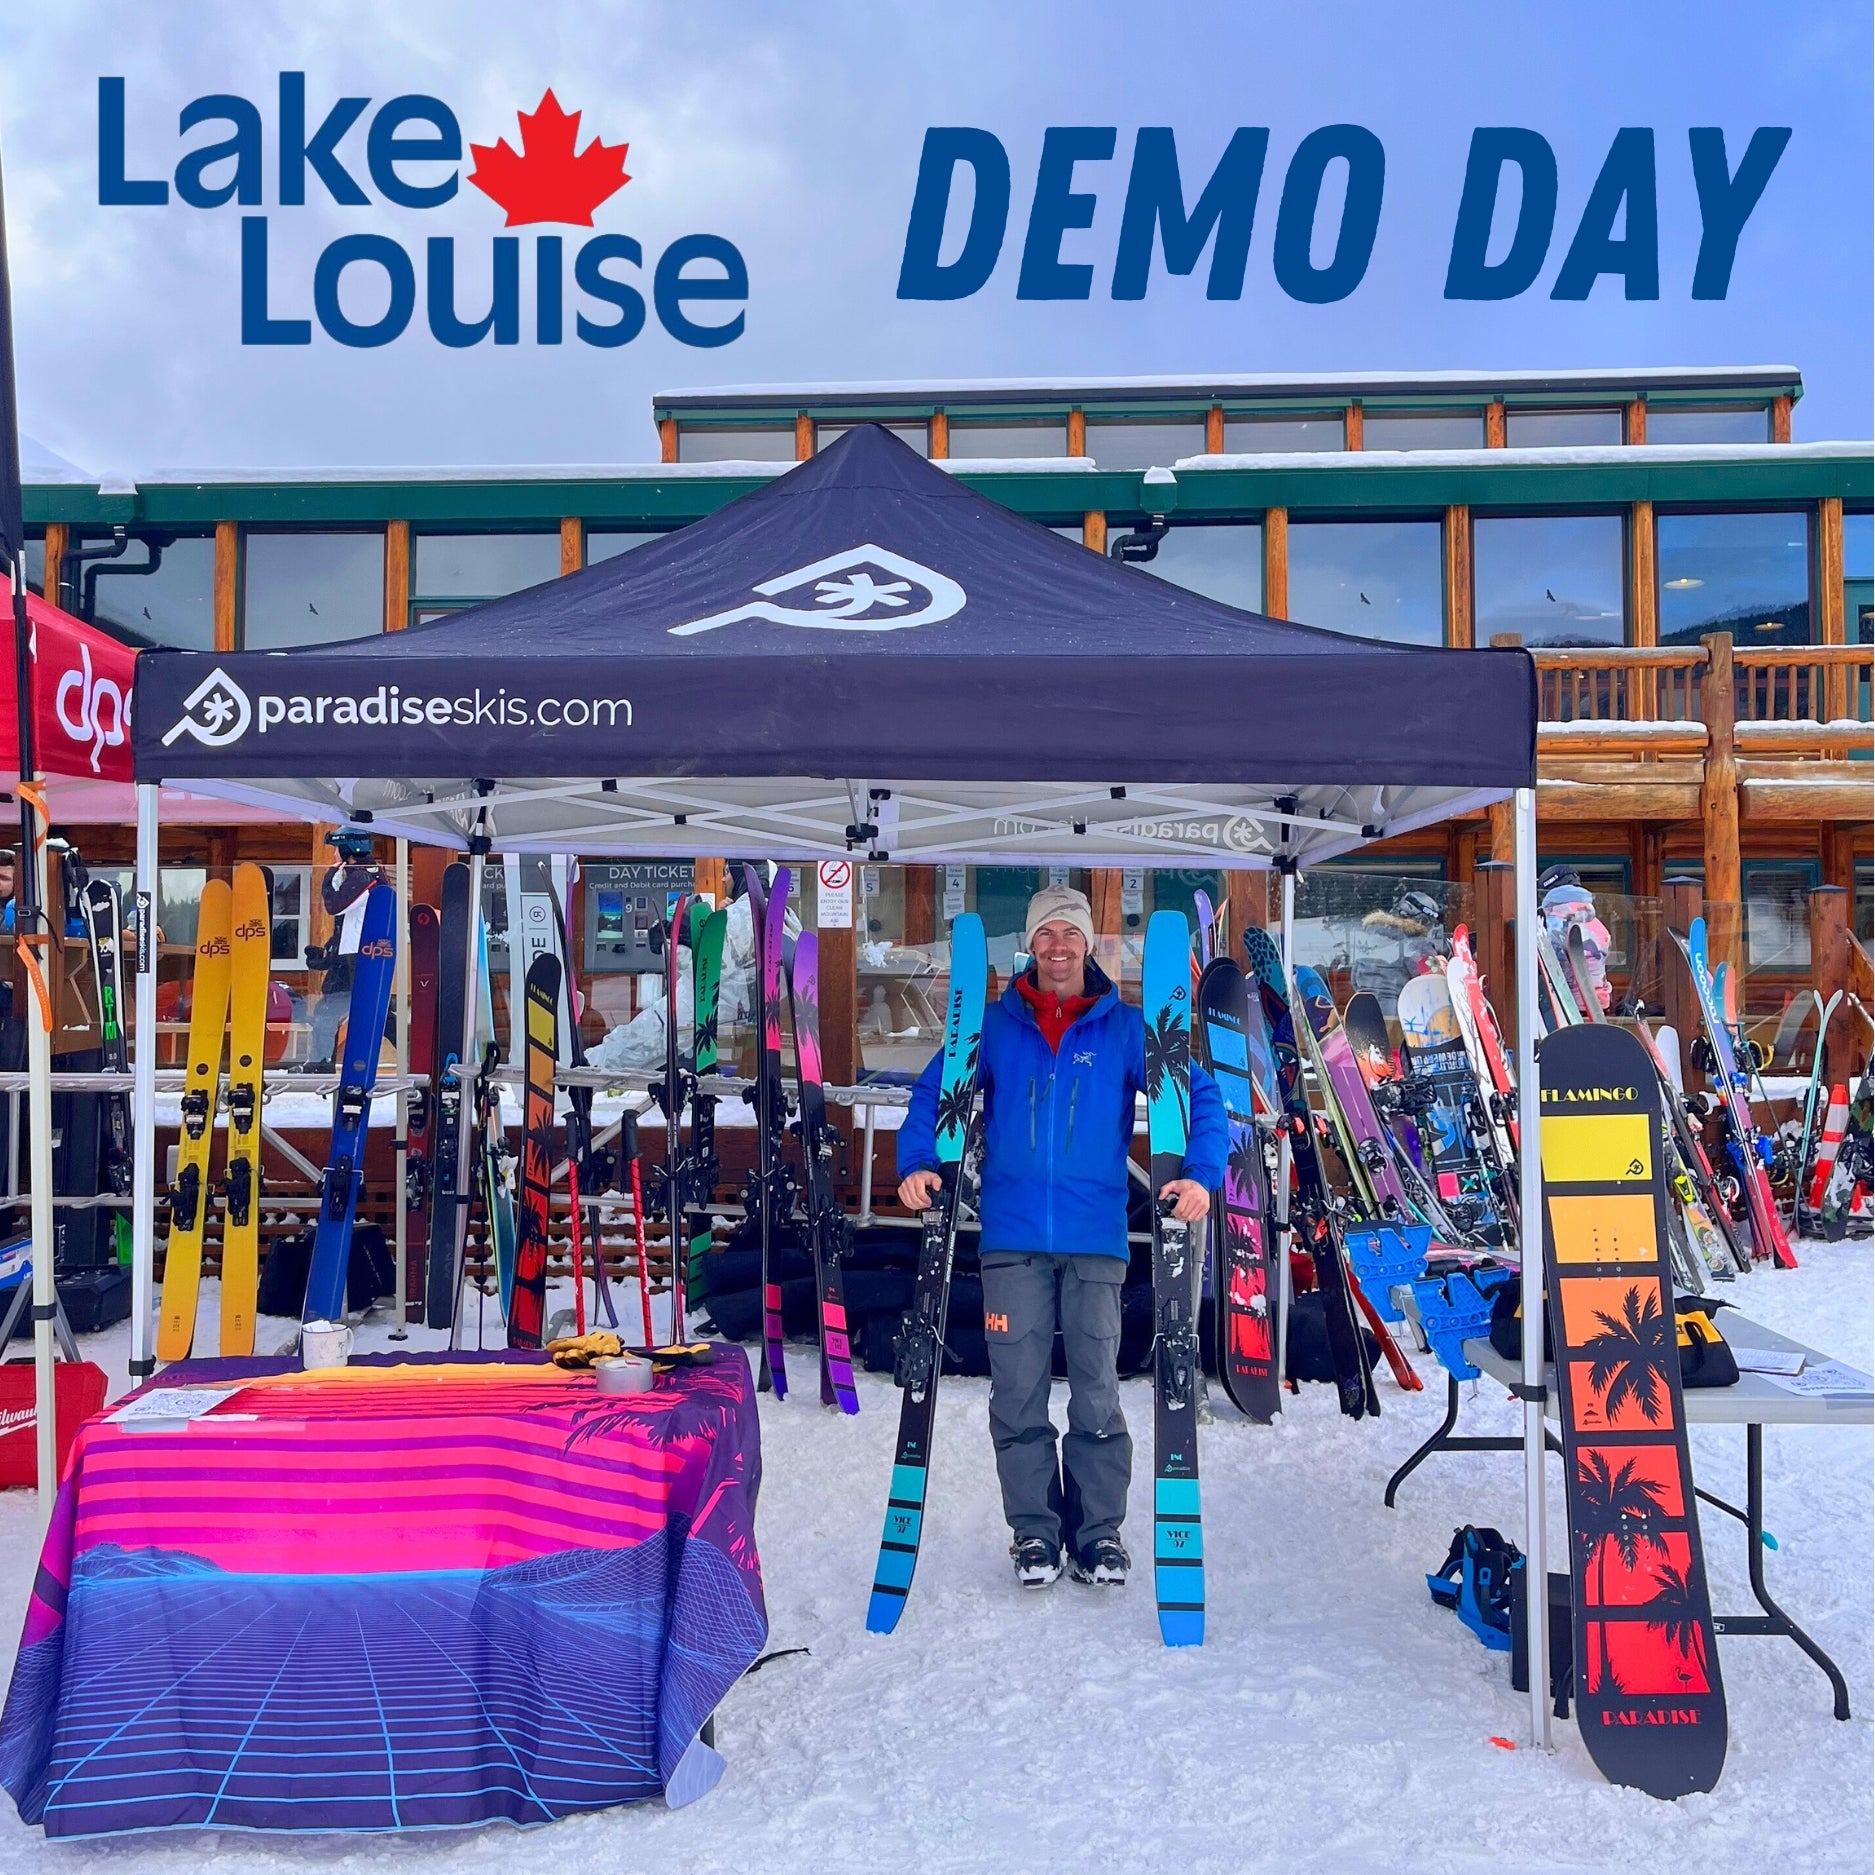 Paradise skis offering free public demos at Lake Louise ski resort